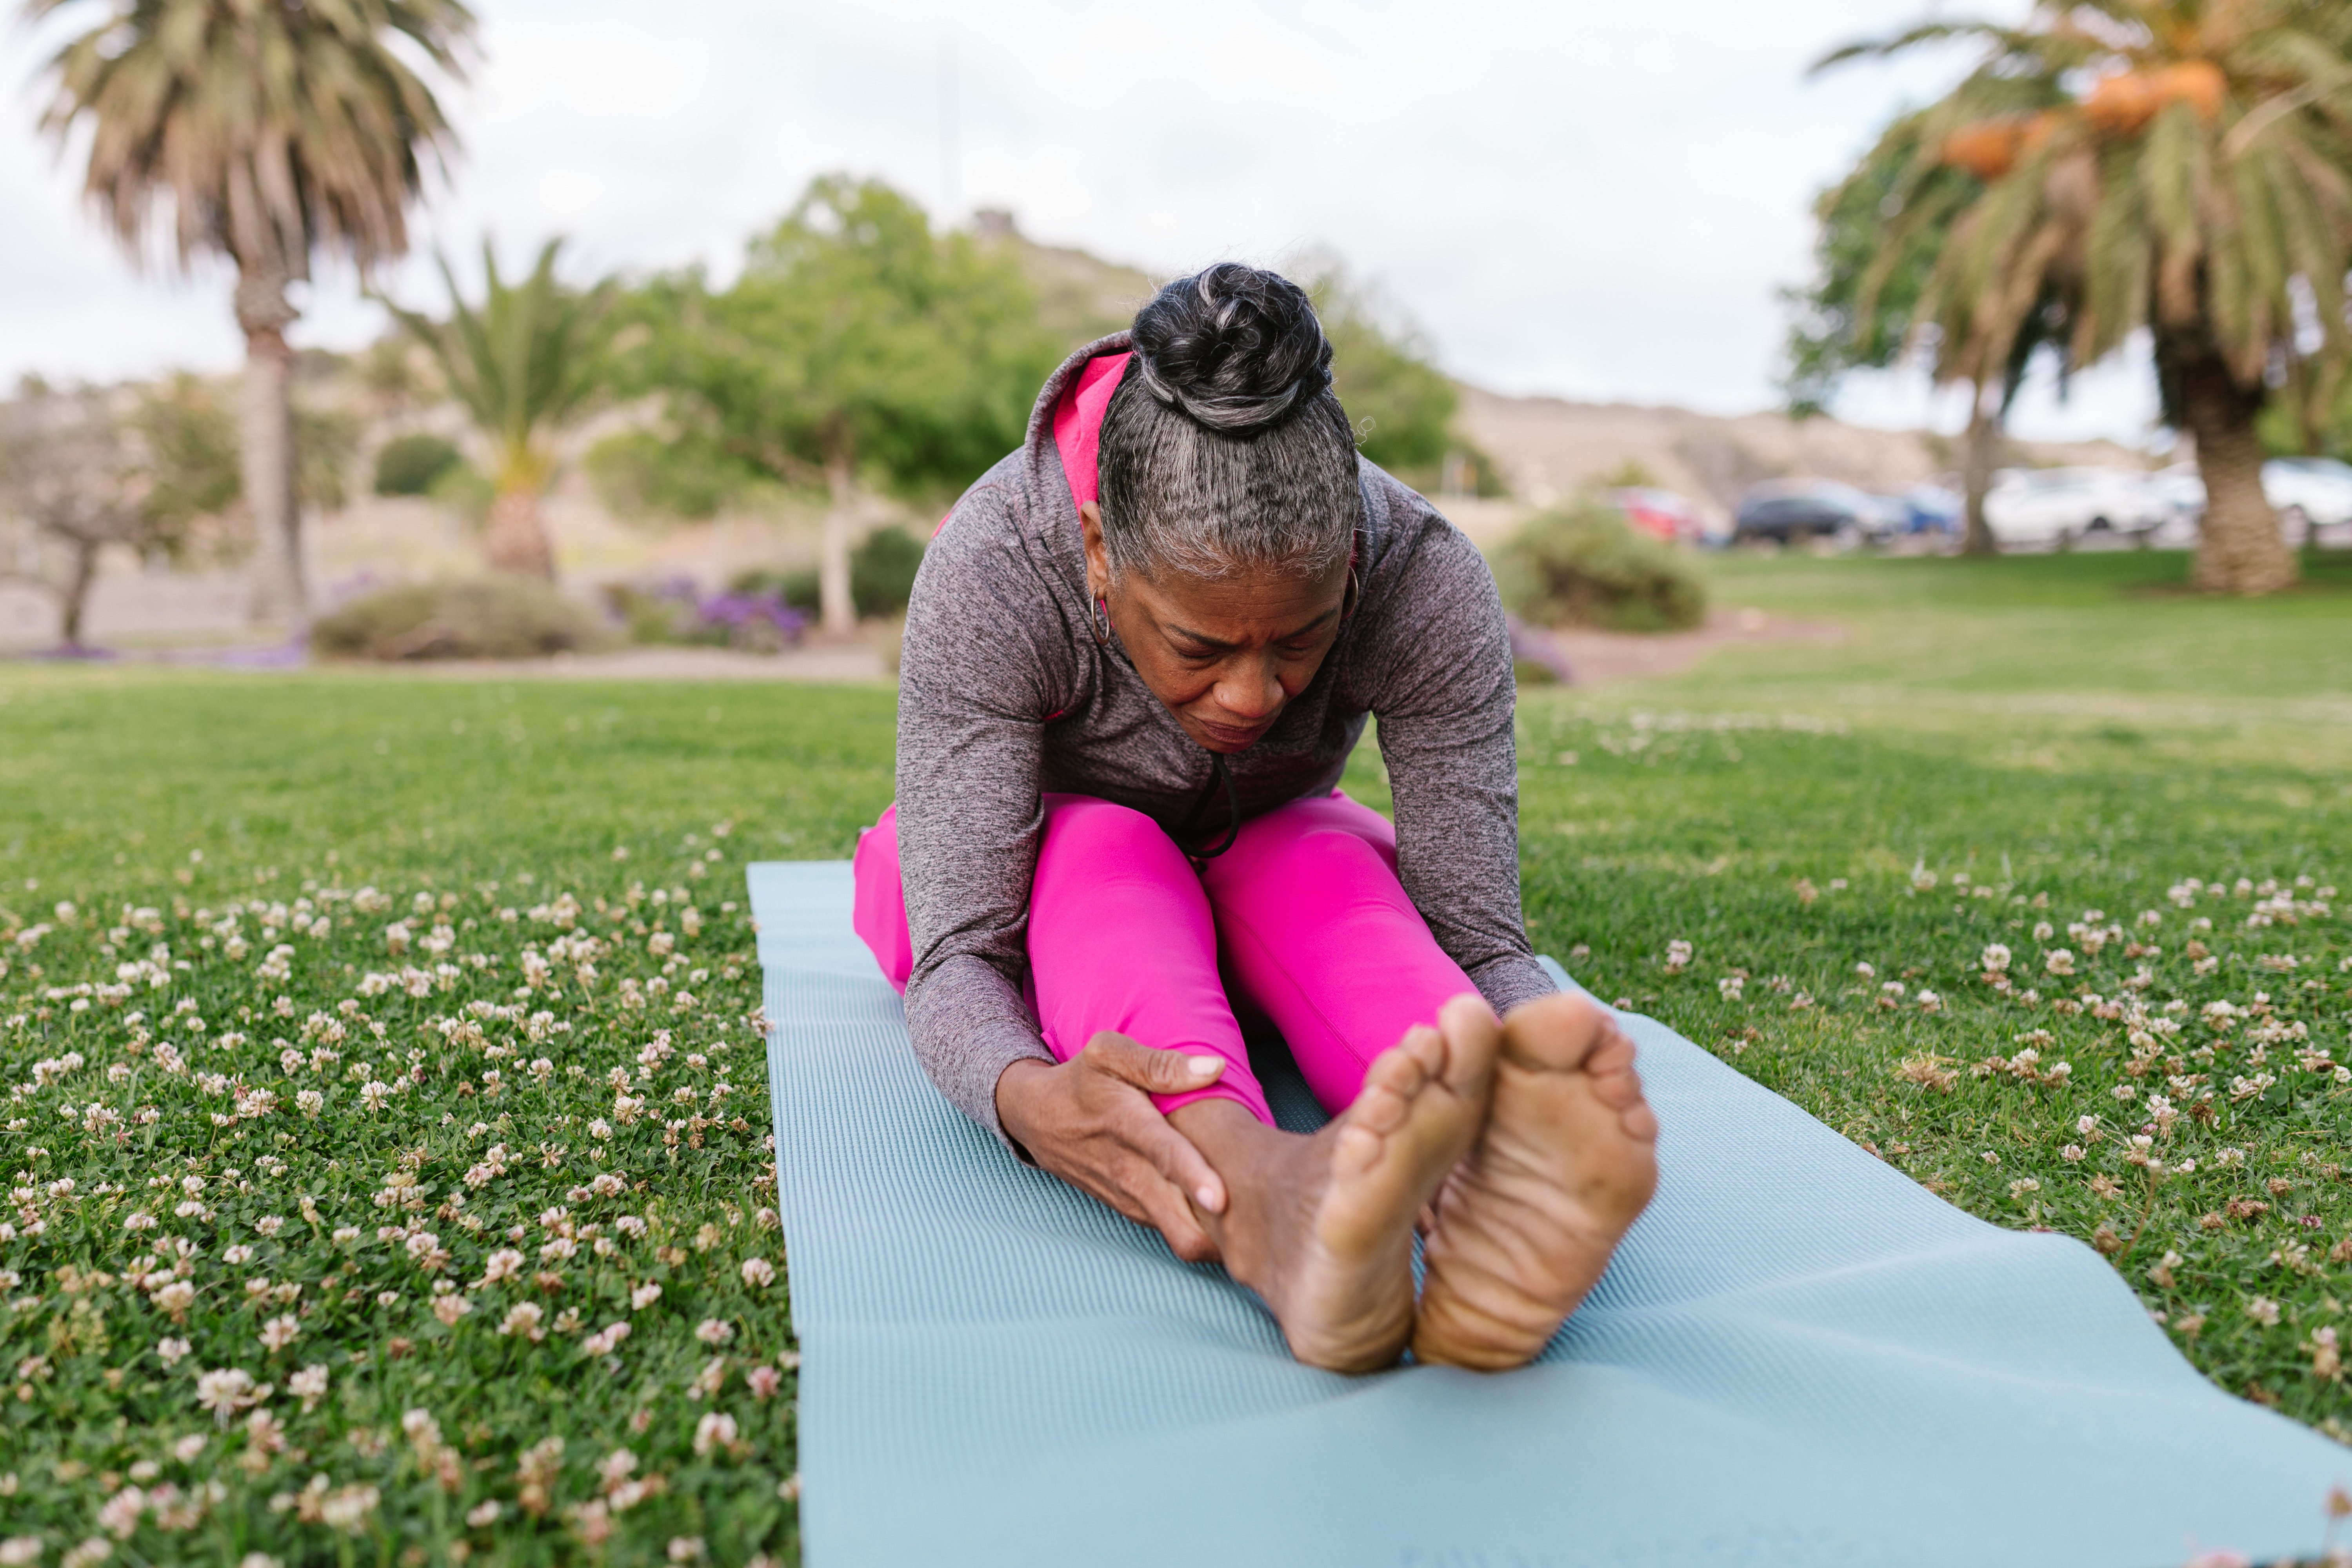 Posições de Yoga podem aliviar desconfortos na terceira idade